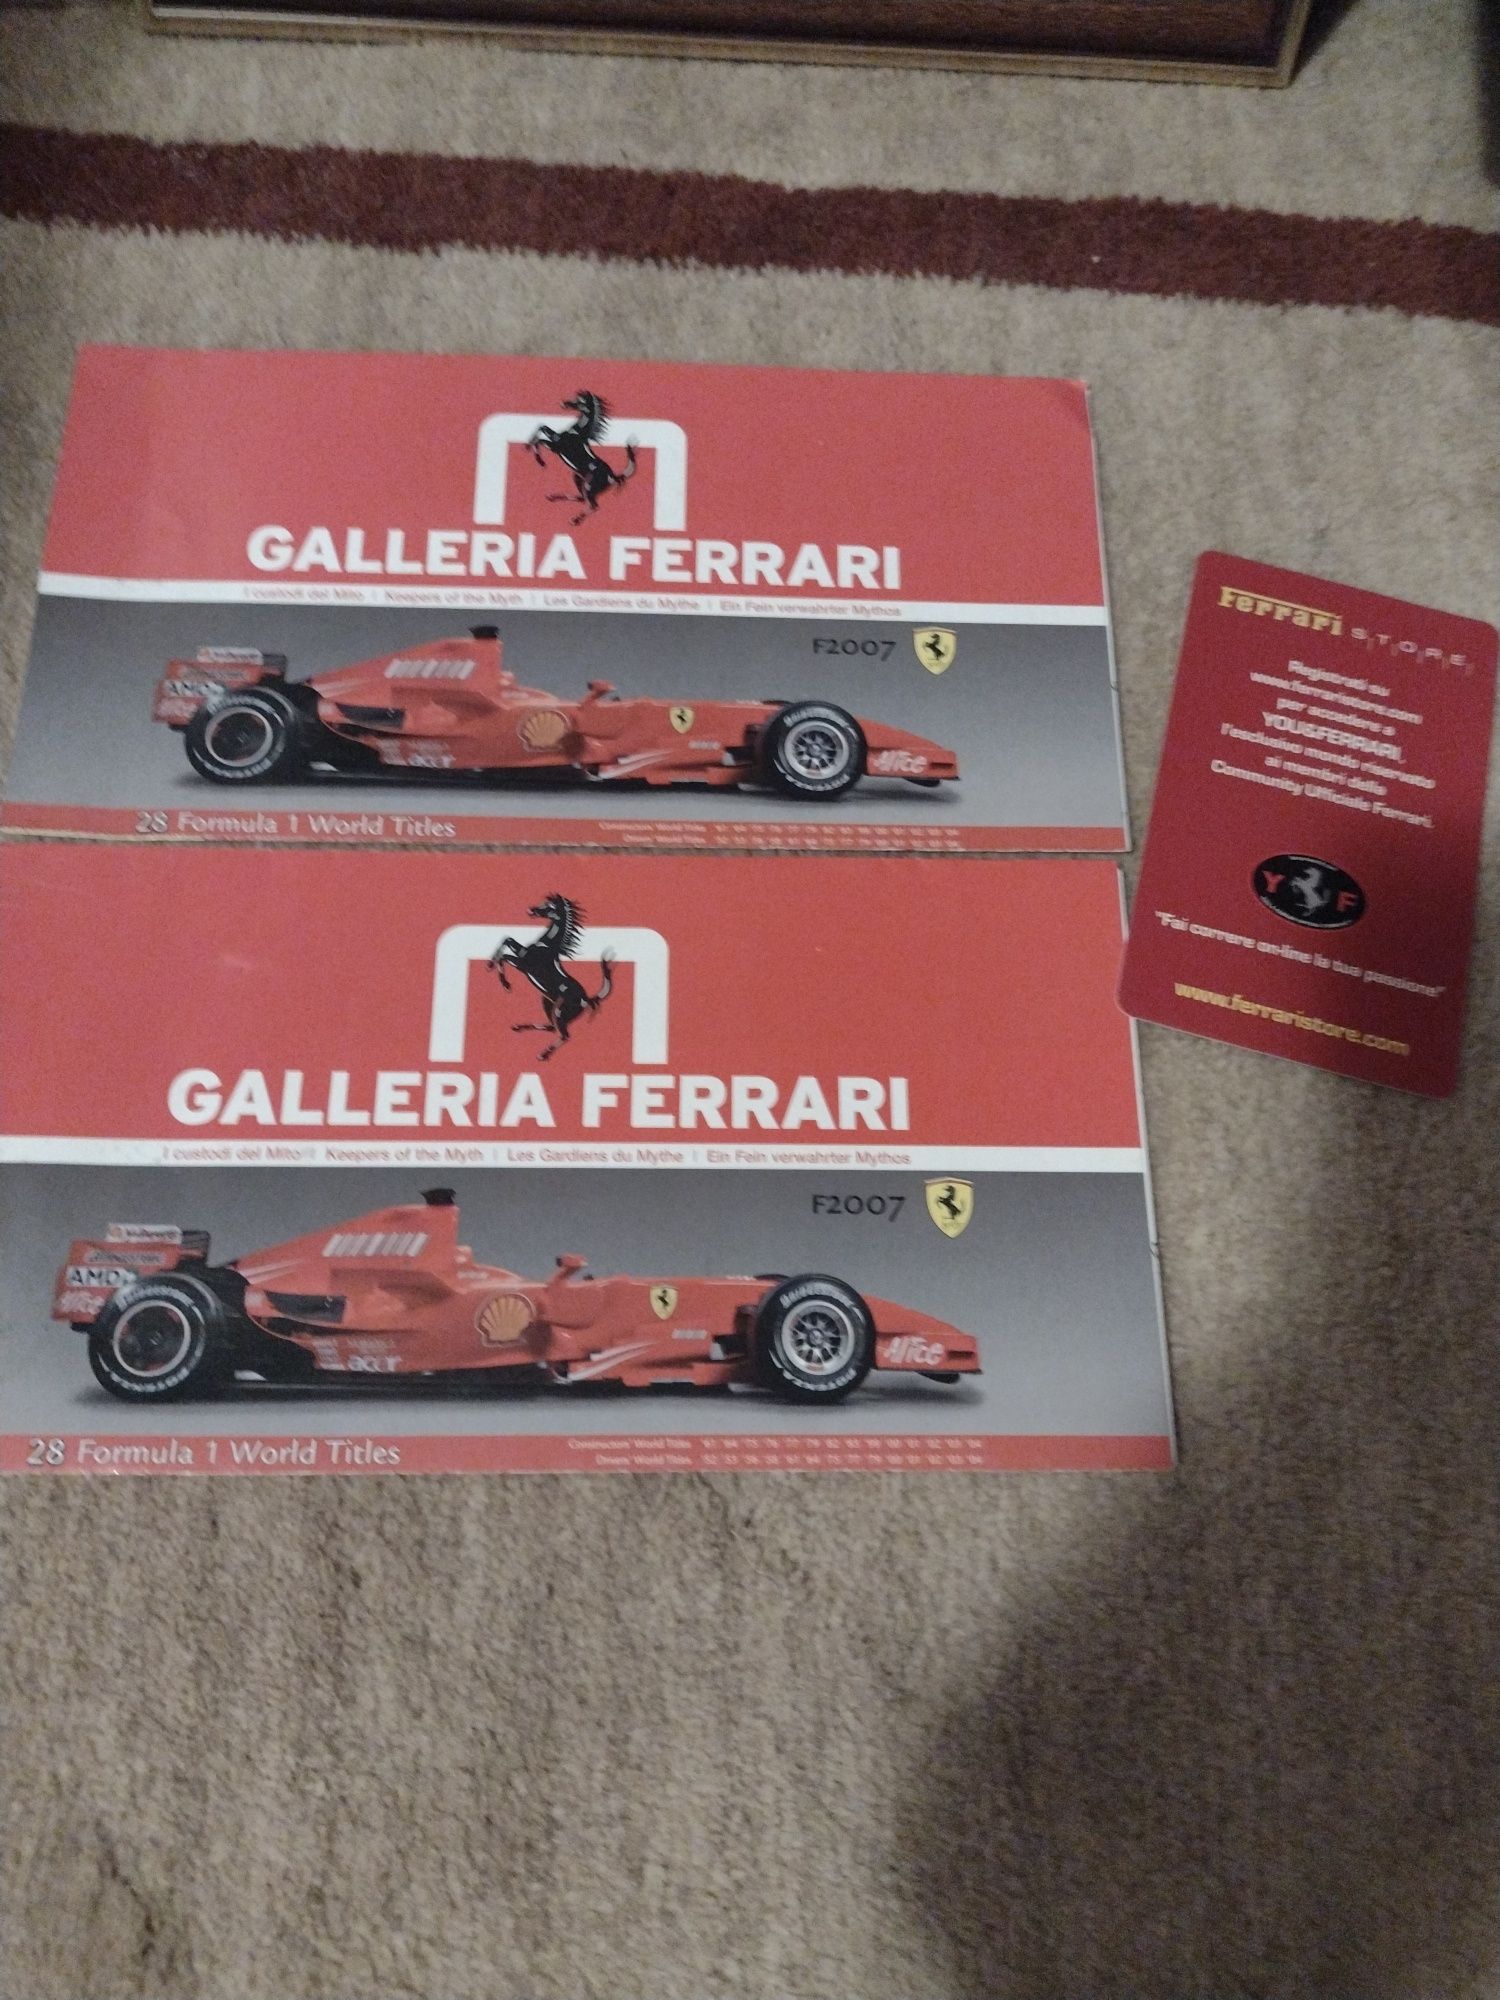 Galleria Ferrari  F2007